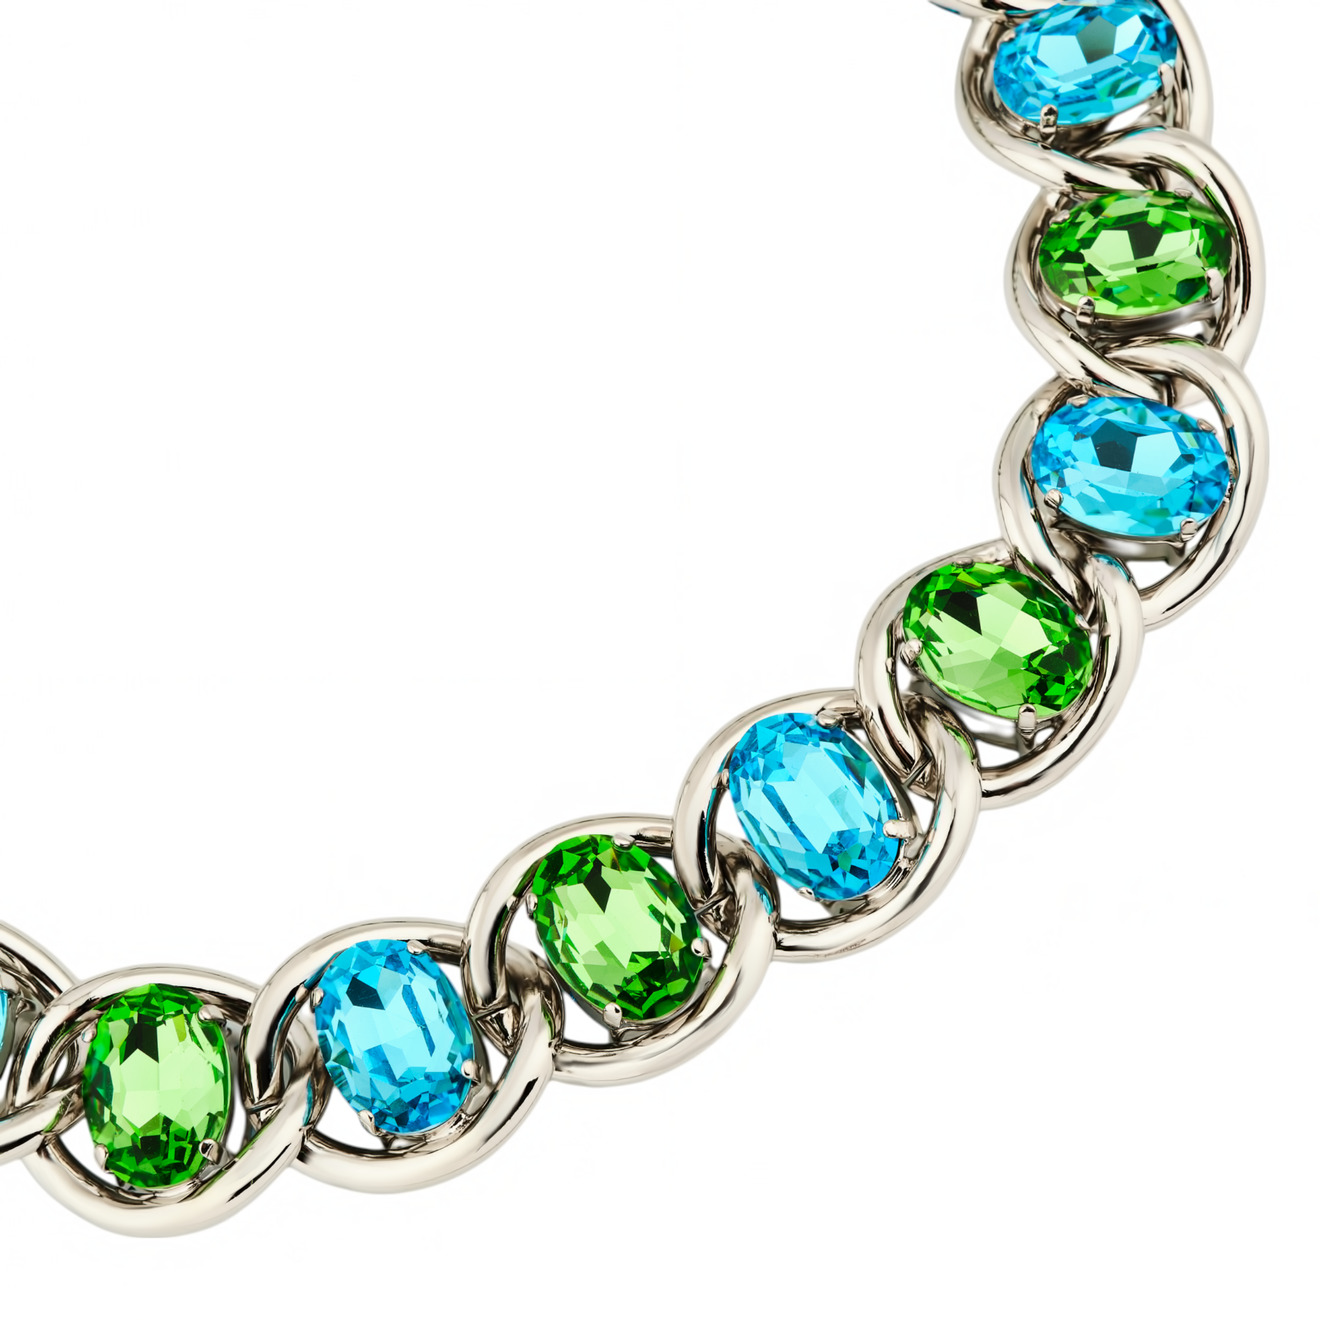 Marni Колье-цепь с зелено-голубыми кристаллами дизайнерский геометрический браслет на руку с кубиками натурального гематита и голубыми кристаллами